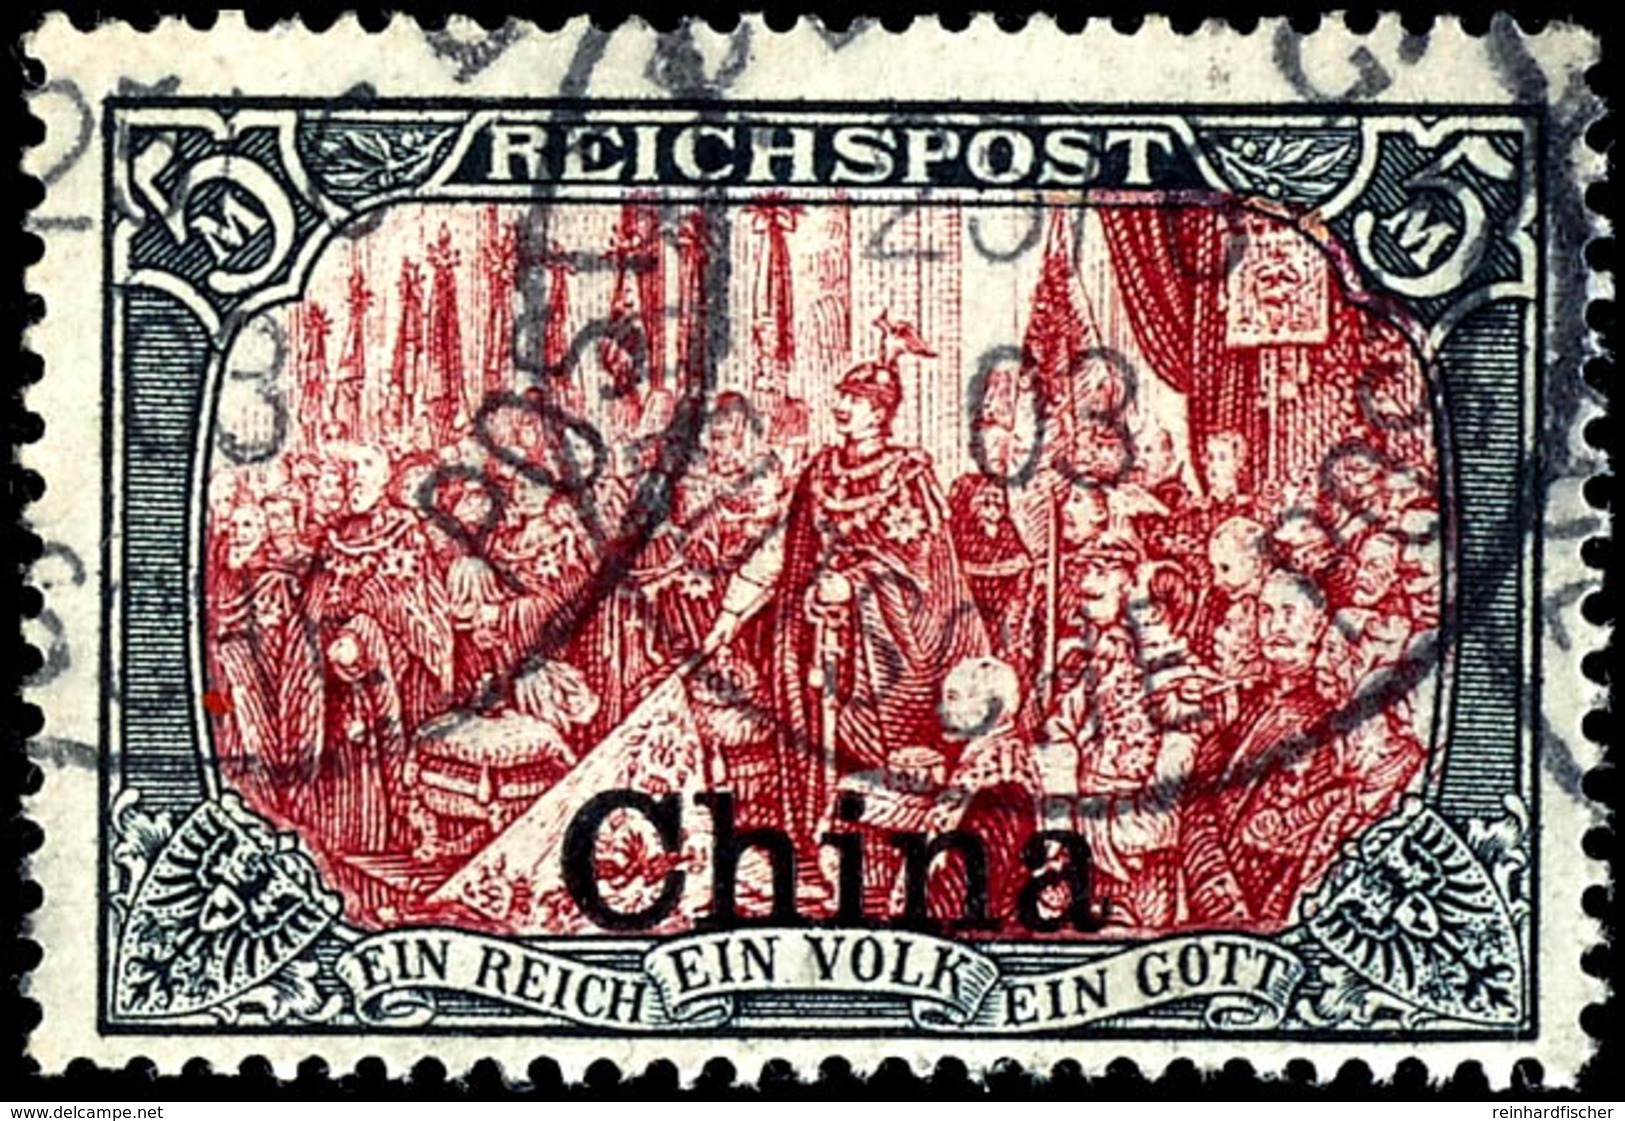 5 M. Reichspost, Type III, Nachmalung Mit Rot Und Deckweiß, Zentrisch Gestempelt K1 "PEKING 25/6 03", Tadellose Erhaltun - China (offices)